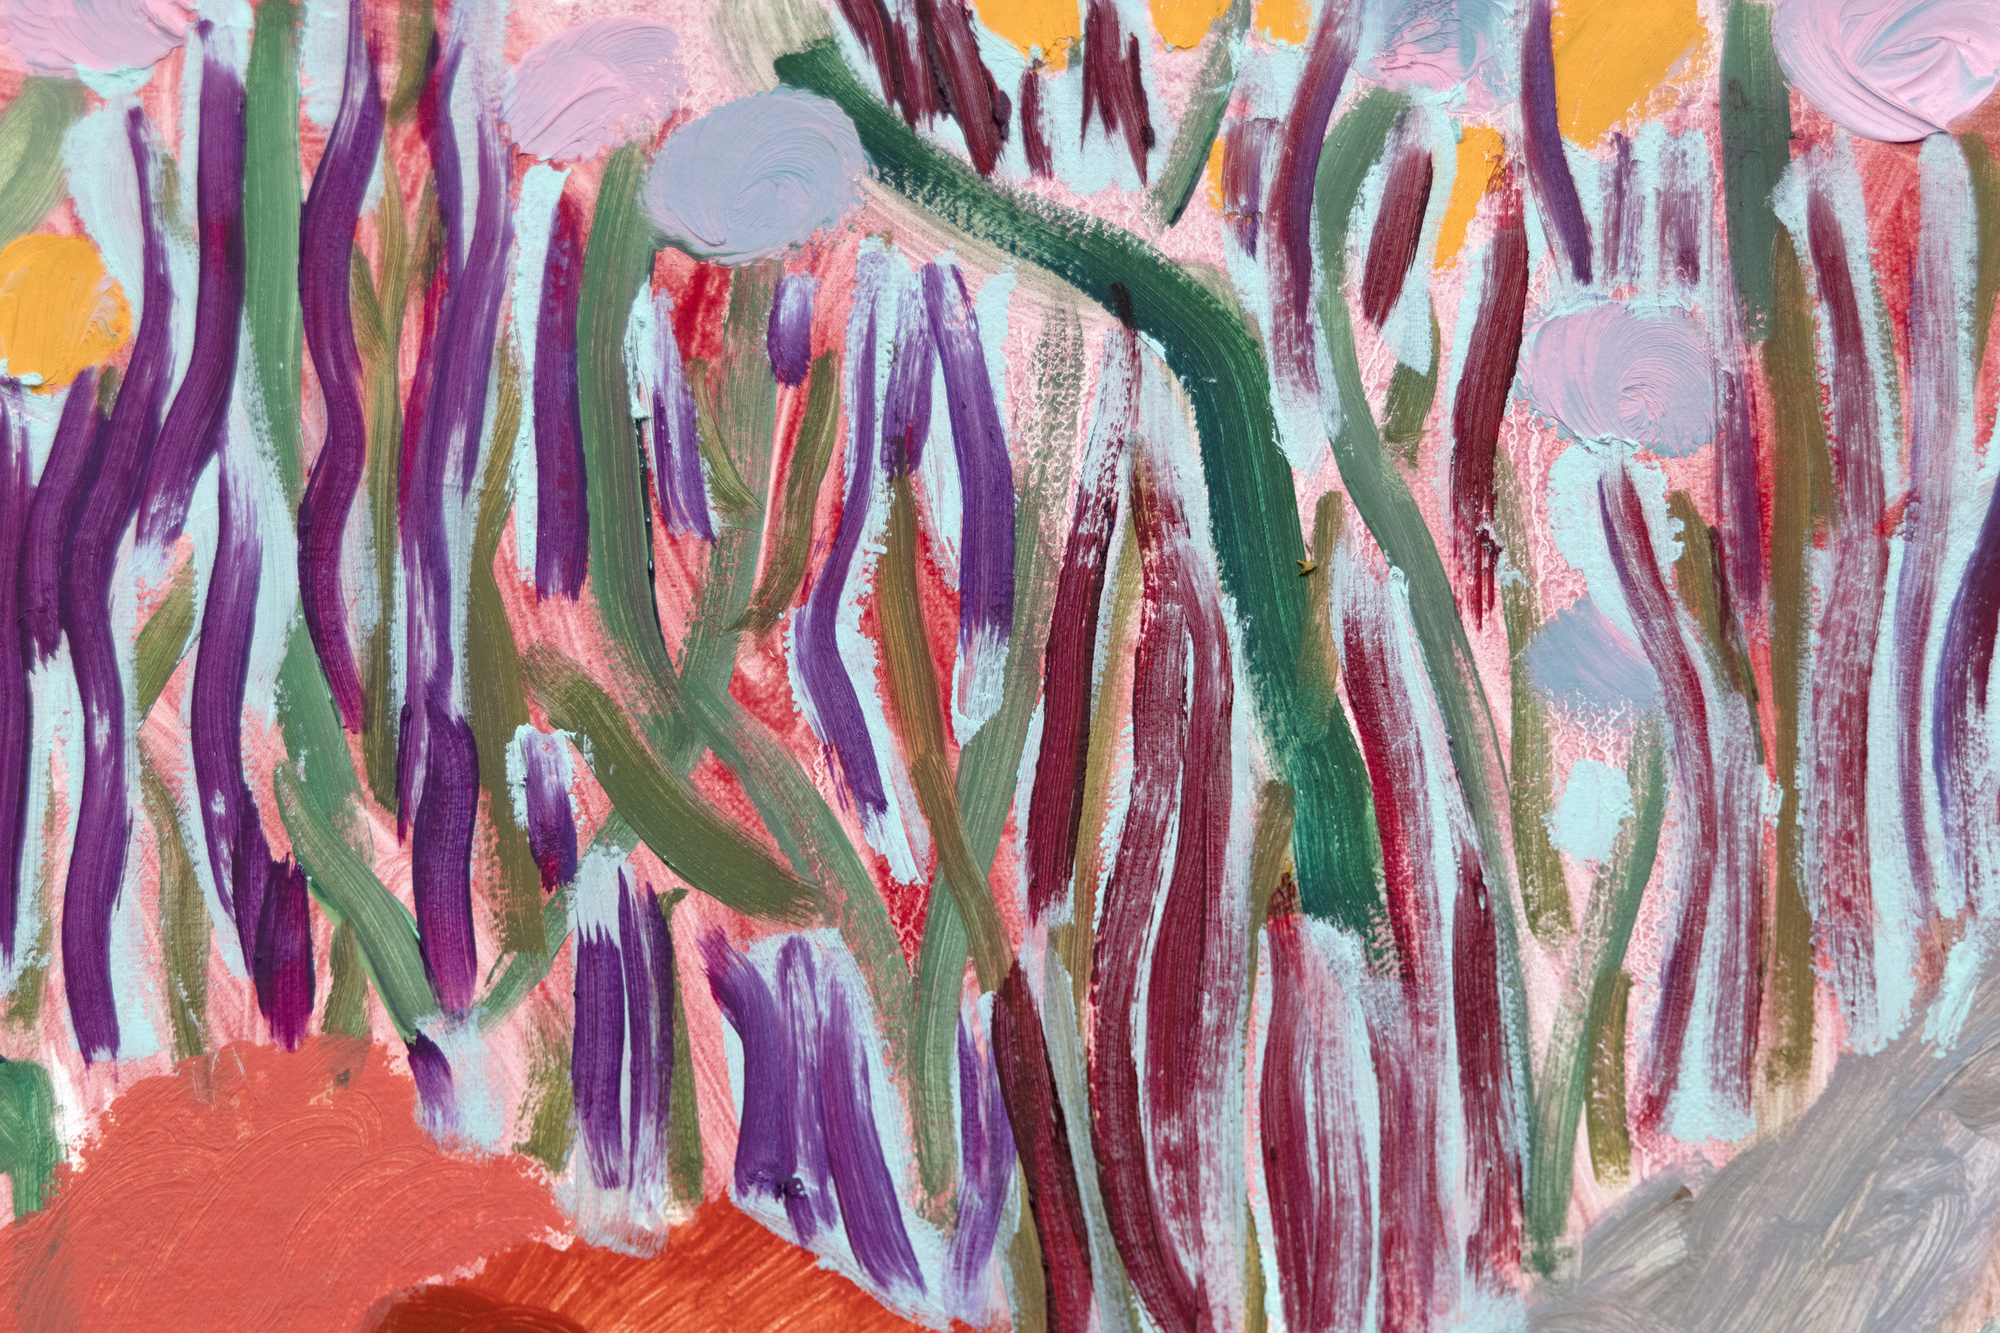 Née à Atlanta en 1981 et installée à Brooklyn, Shara Hughes est célèbre pour son approche particulière de la peinture de paysage, combinant des influences historiques avec des sensibilités contemporaines. Sa palette de couleurs jubilatoires rappelle des maîtres comme Henri Matisse, avec l&#039;audace visuelle et stylisée de David Hockney, tout en reconnaissant une tradition plus large de la peinture de paysage, notamment les influences de l&#039;art nouveau, du fauvisme et de l&#039;expressionnisme allemand. All the Pretty Faces est une synthèse moderne des mouvements artistiques historiques et de l&#039;imagerie numérique actuelle, présentant aux spectateurs des mondes captivants et inventés qui font le lien entre le passé et le présent. Elle évoque également l&#039;une des citations les plus frappantes de Hughes à propos de ses paysages novateurs remplis d&#039;éléments fantastiques : &quot;J&#039;ai souvent pensé aux fleurs et aux arbres comme à des figures. Parfois, même une vague ou un soleil dans la peinture prend une personnalité, donc cela varie en fonction de la façon dont l&#039;œuvre est réalisée.&quot;